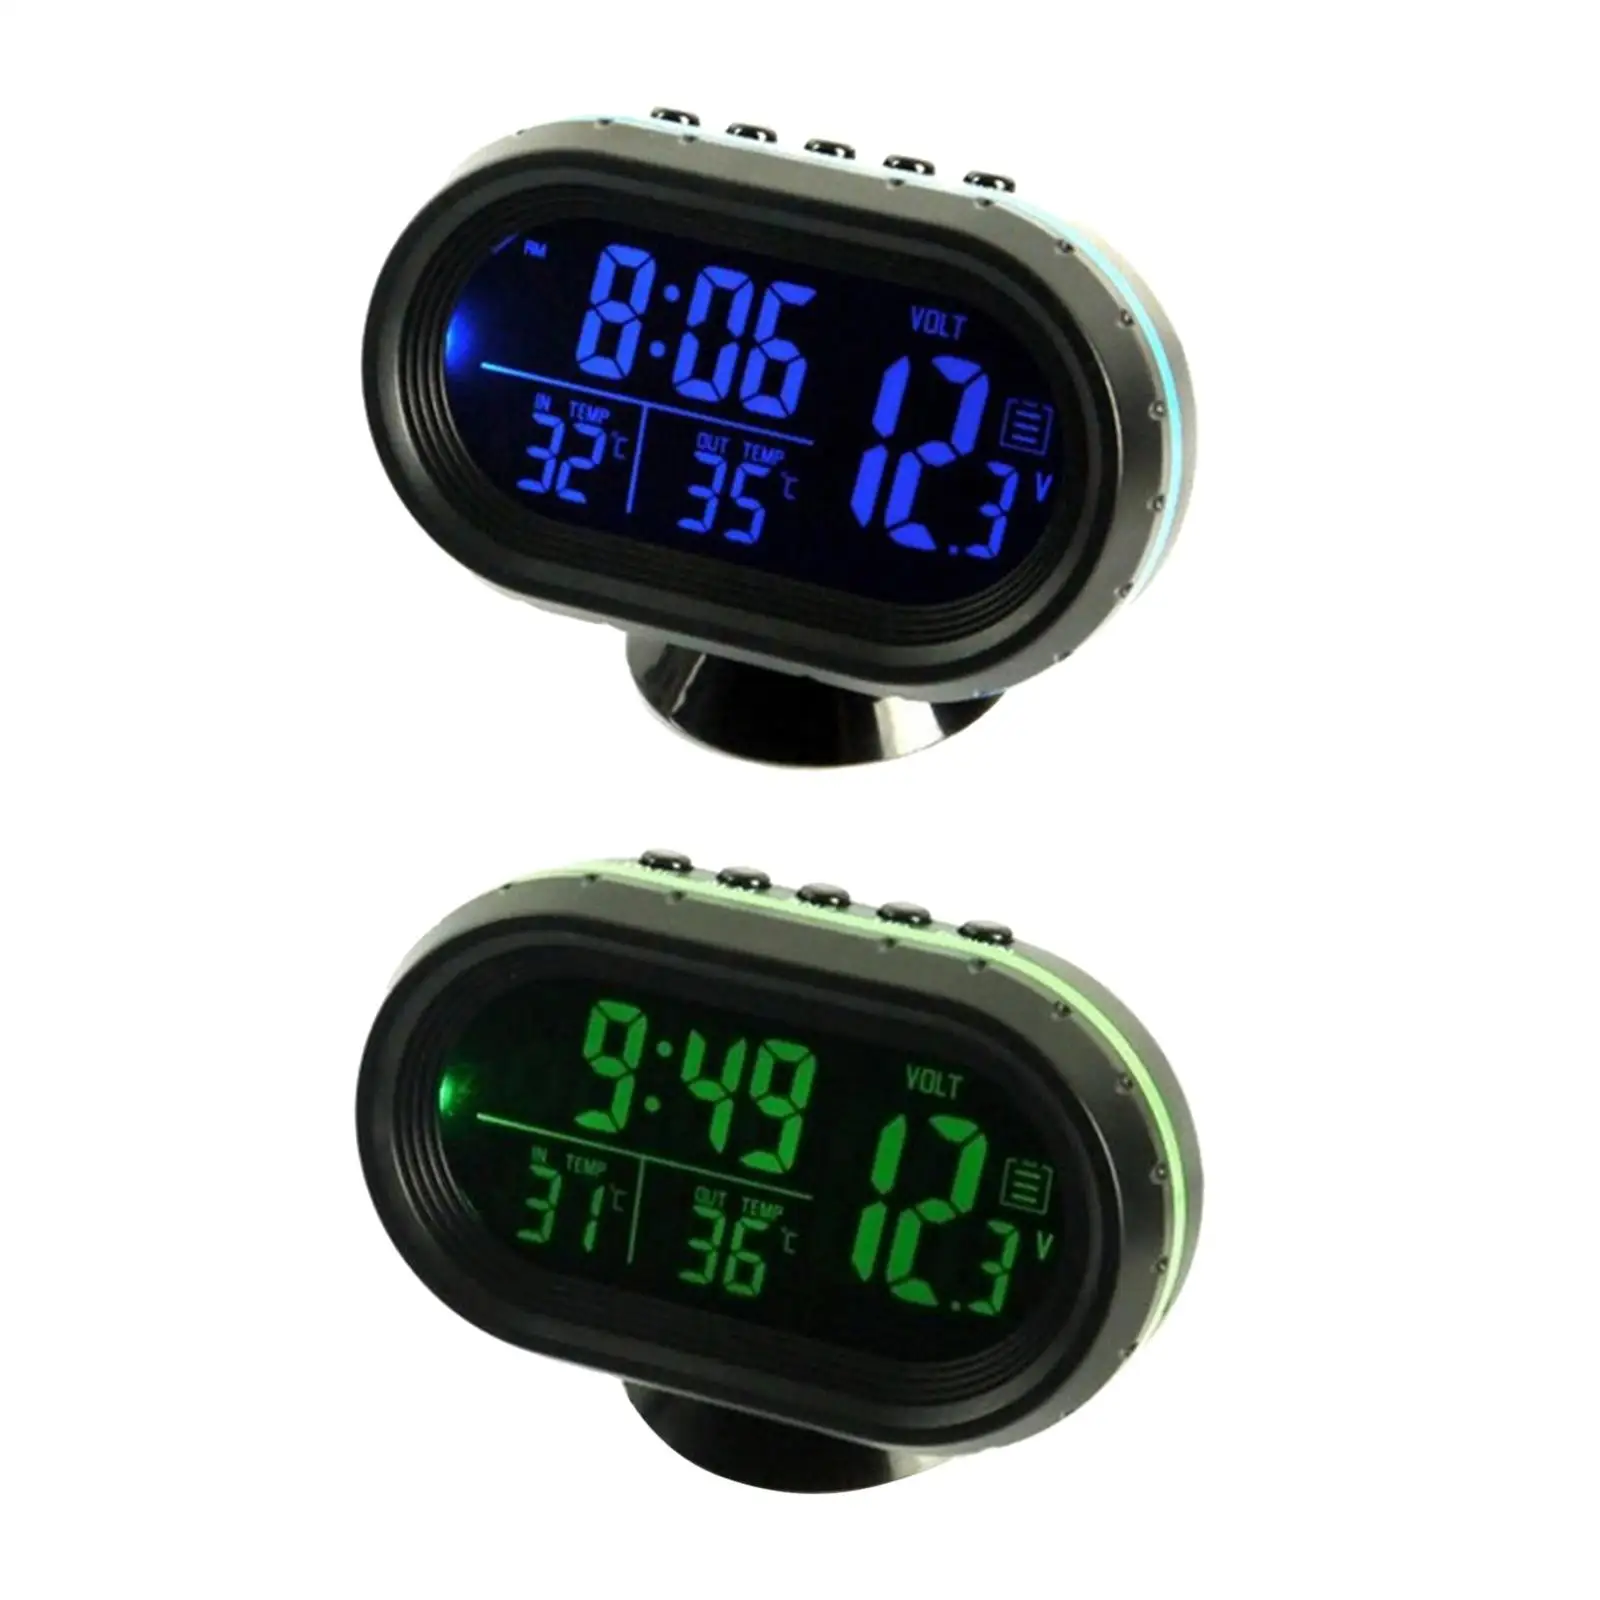 Car Digital Thermometer Clock Voltmeter Dual Temperature Gauge Alarm Monitor